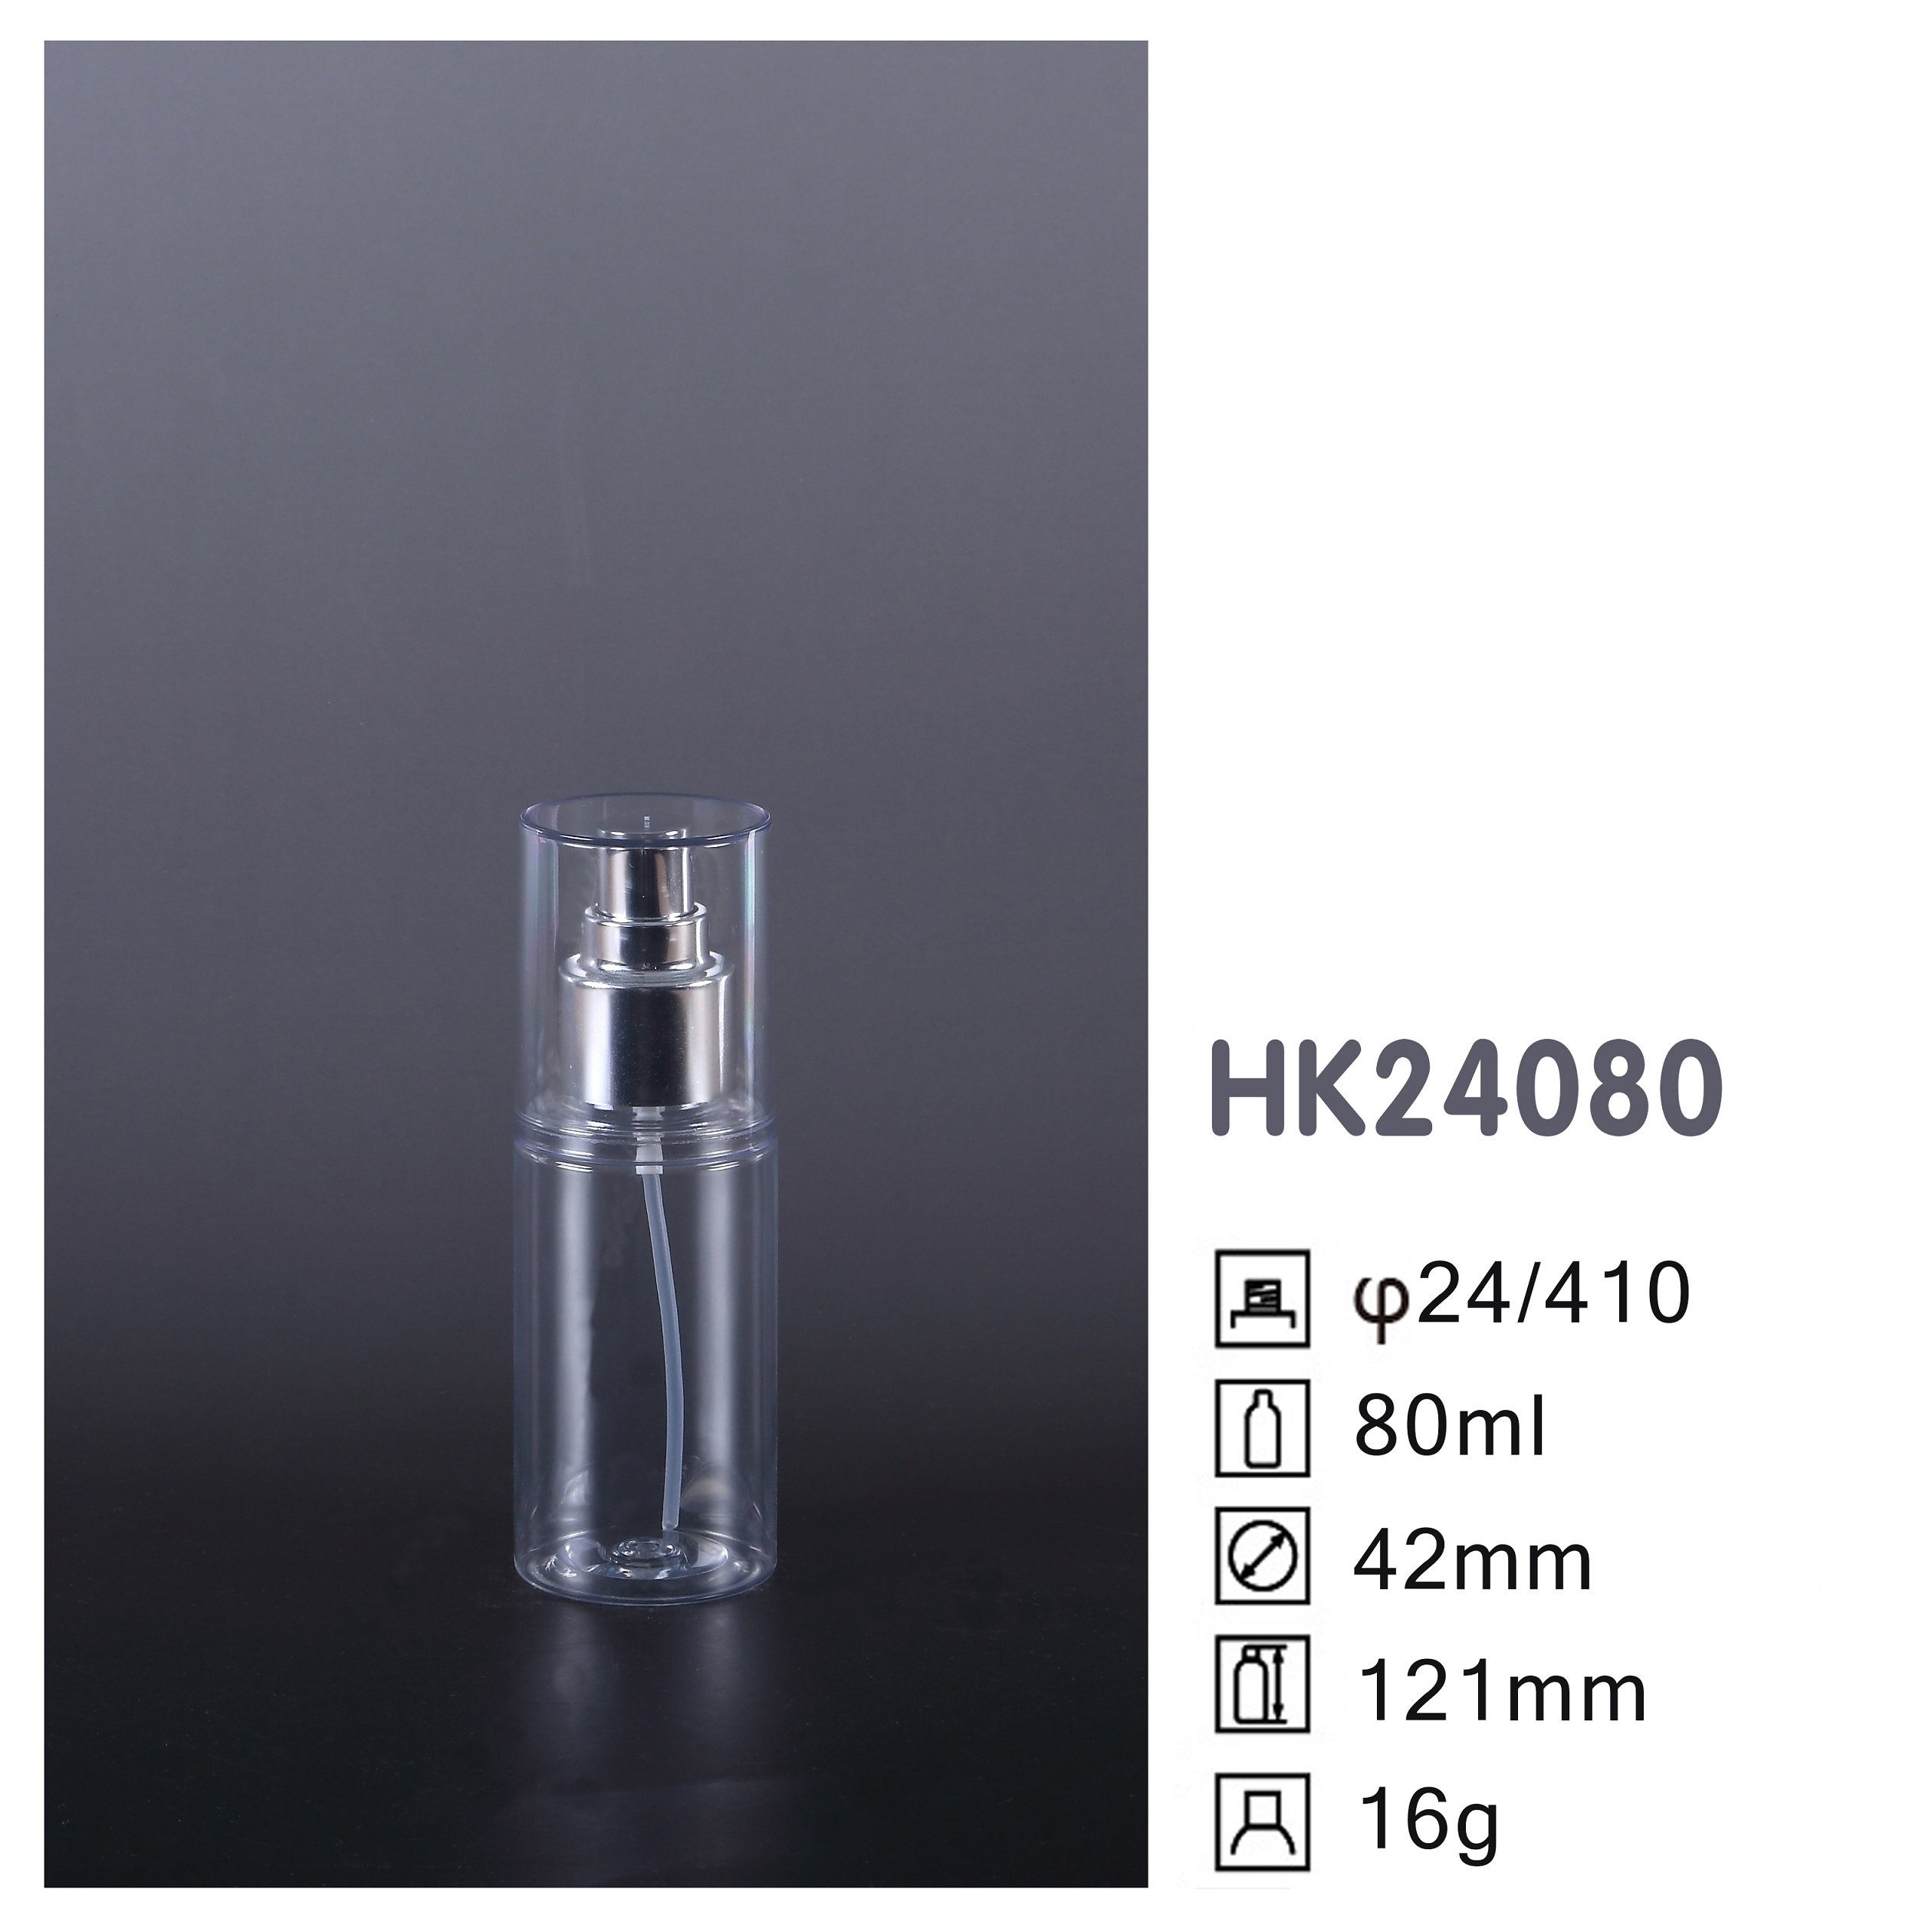 HK24080